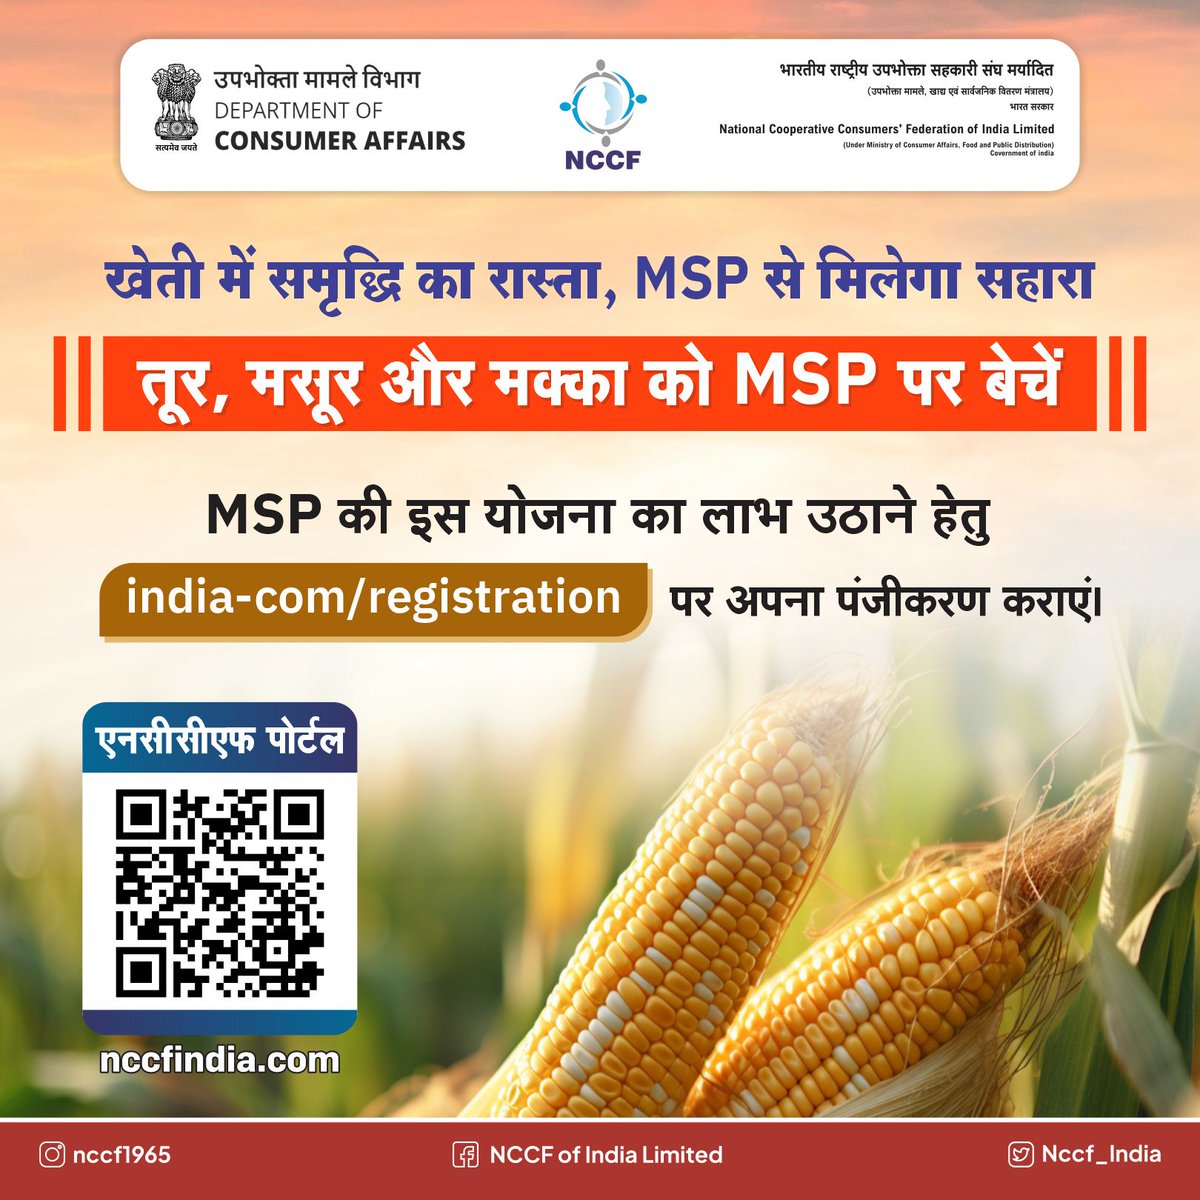 तूर, मसूर और मक्का को MSP पर बेचकर किसानों को मिलेगा उनका हक़! अपना पंजीकरण करें india.com/registration पर। #TurDal #MasoorDal #Maize #MSP #Registration #Portal